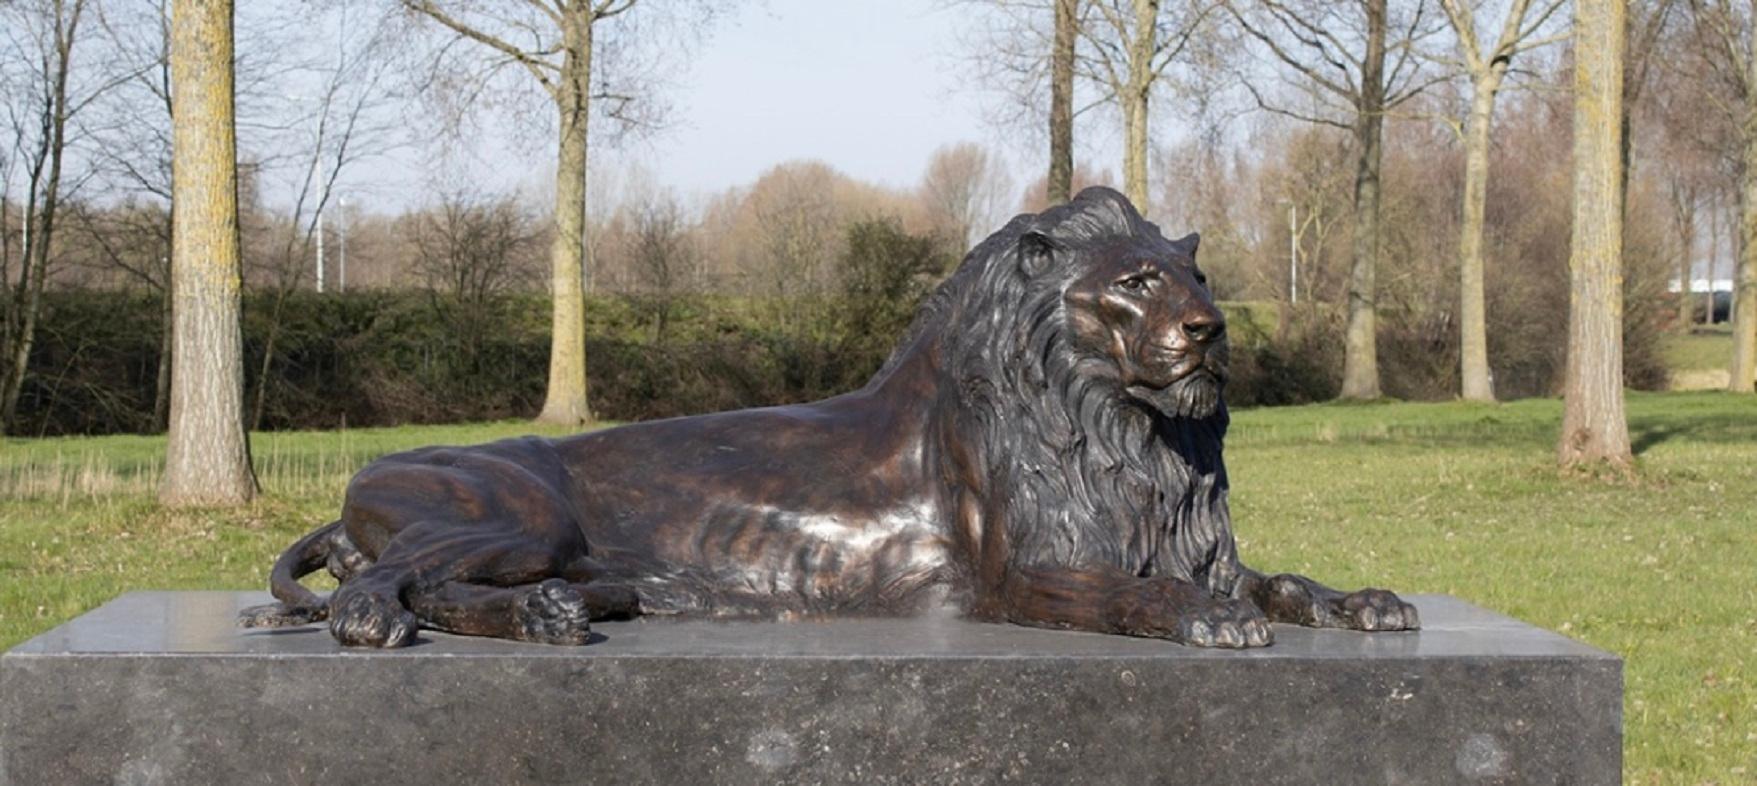 Sculpture de lion couché sur duvet en bronze - Grande statue - Réalisme néerlandais